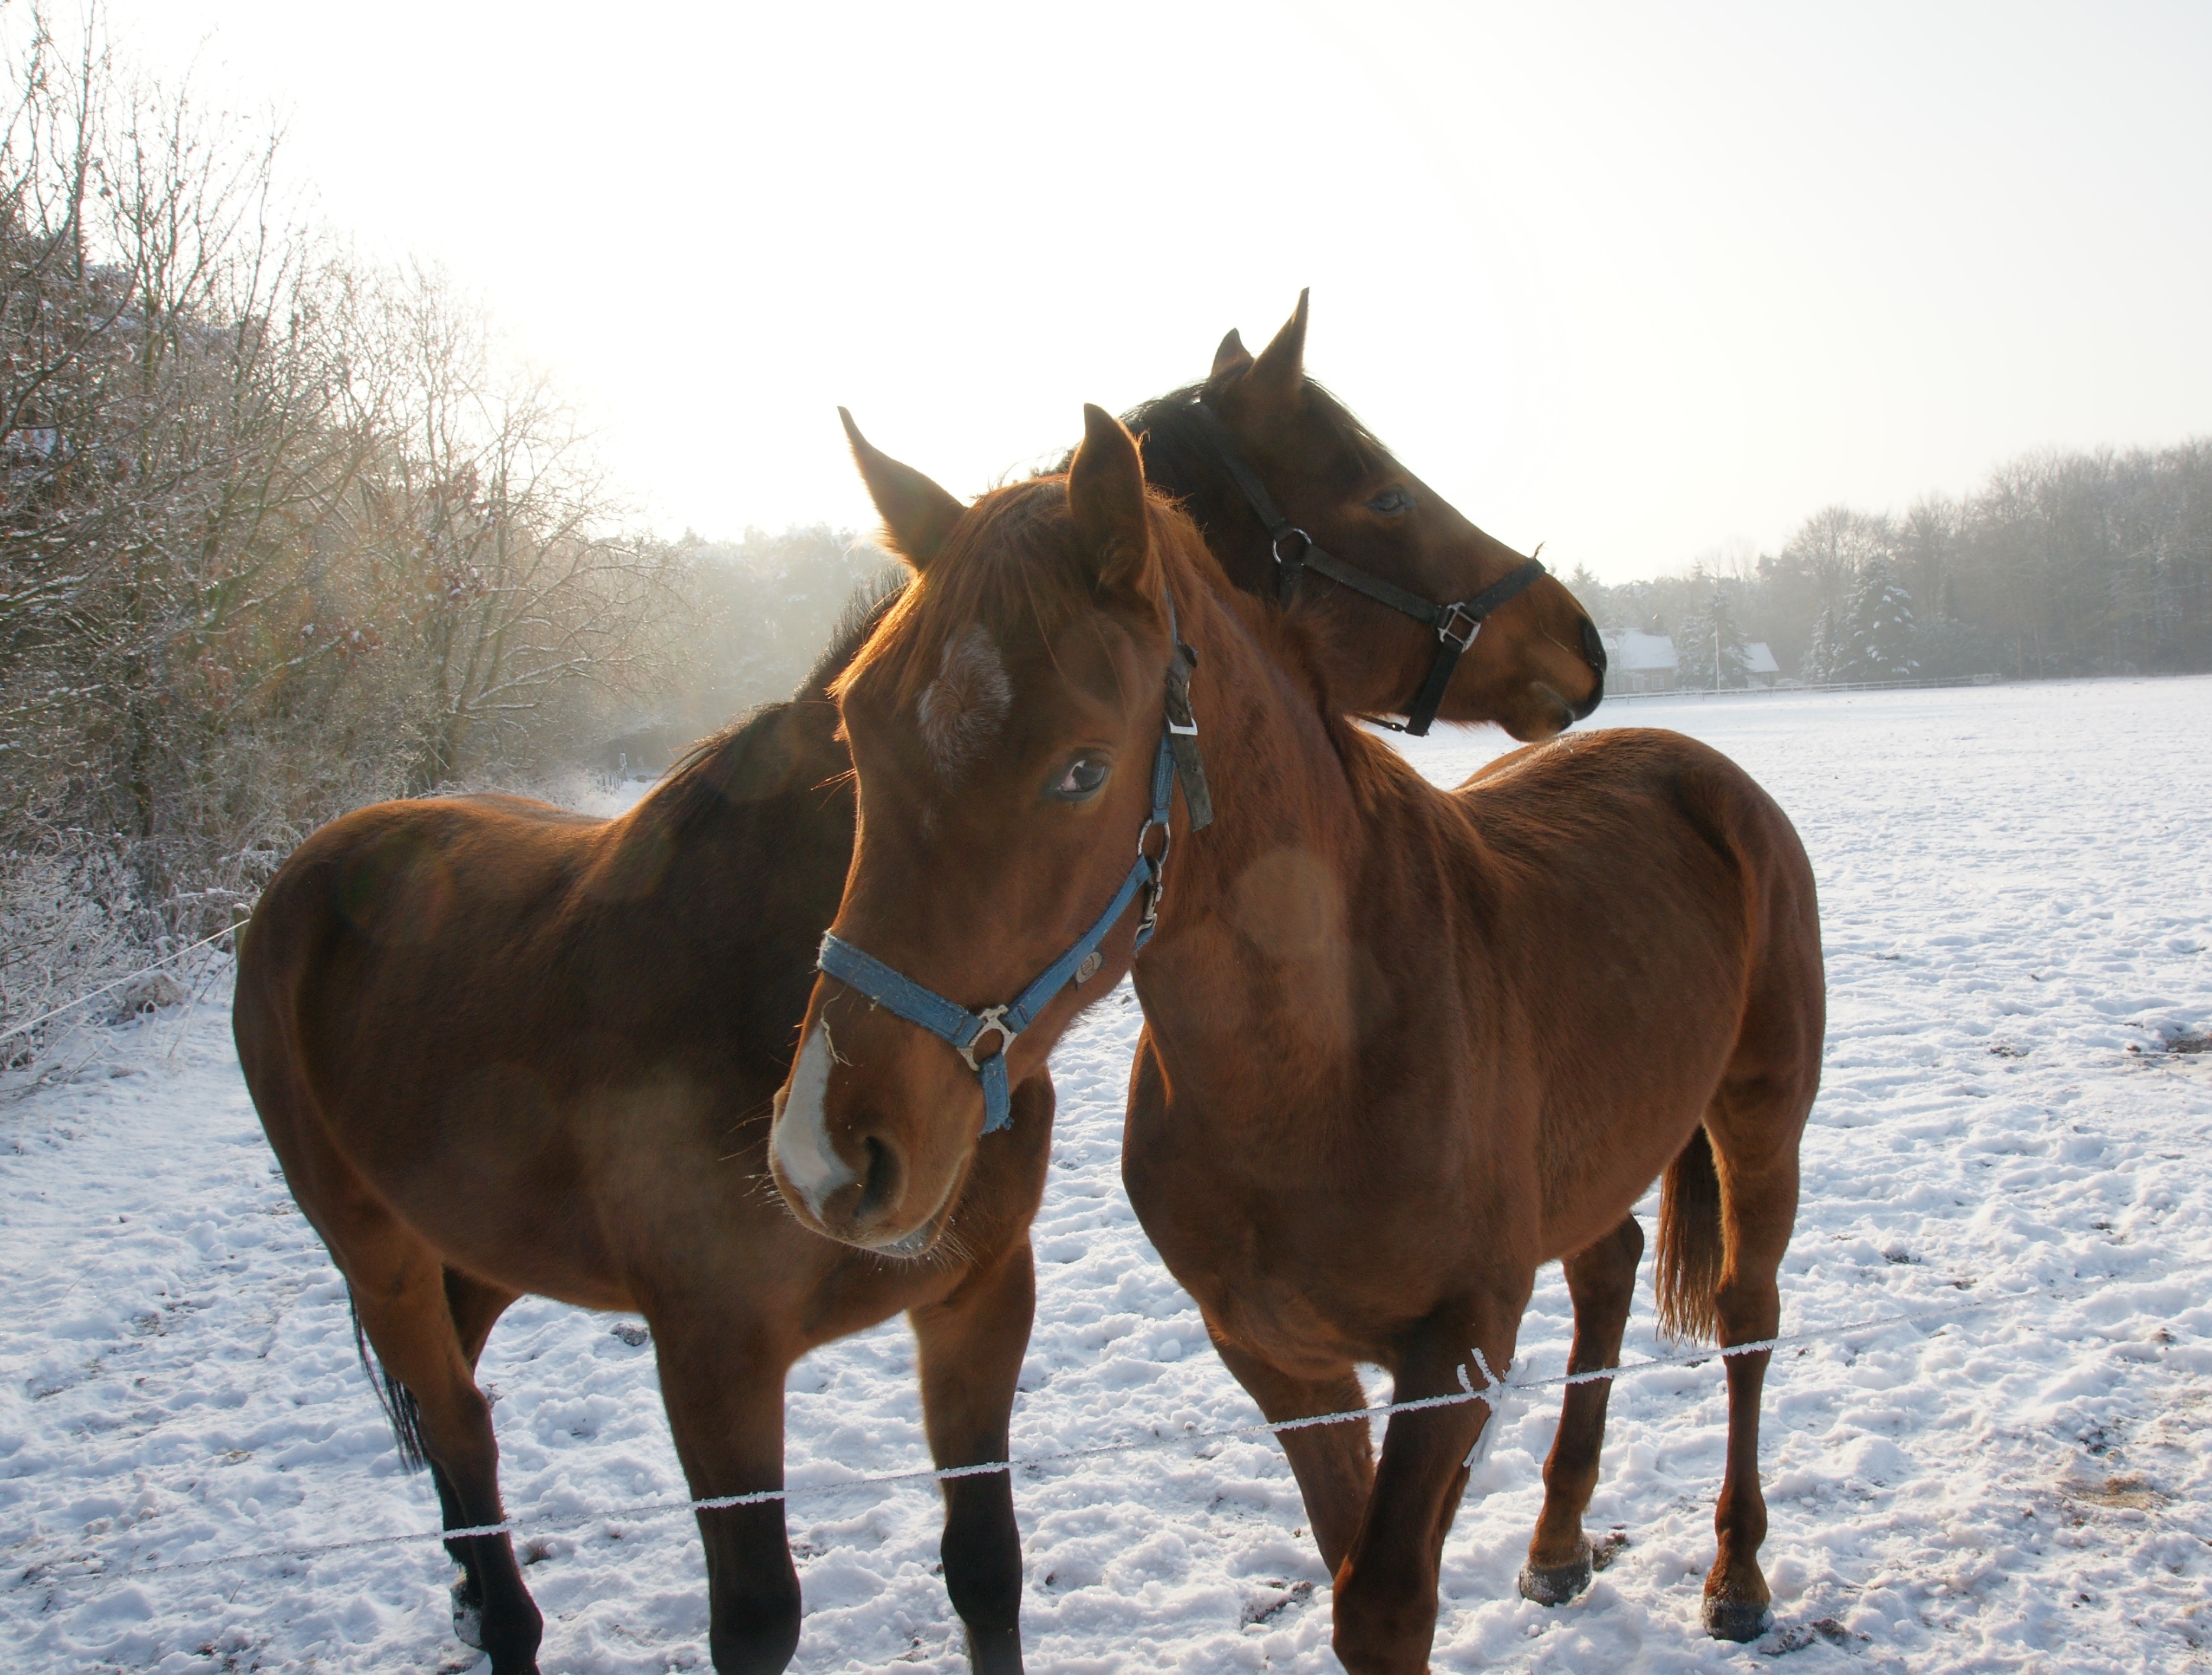 2 brown horses